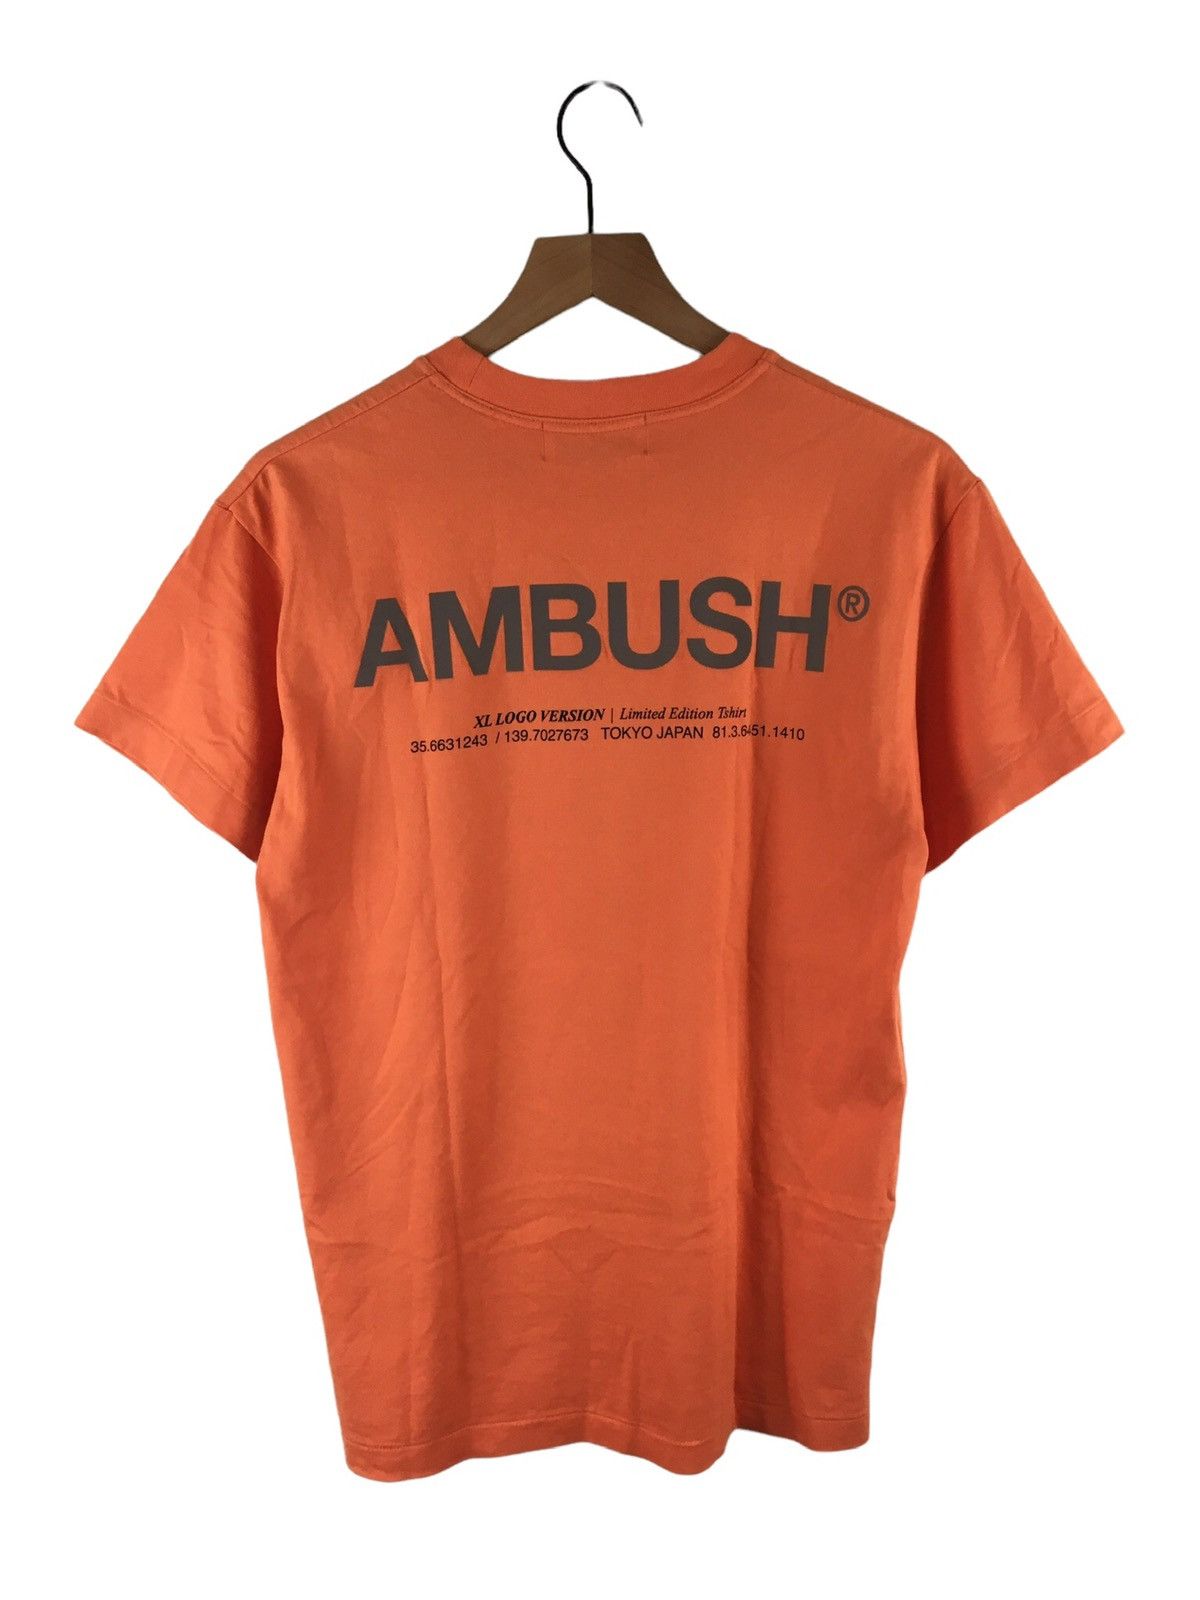 Ambush Design Ambush Logo Back Print Tee | Grailed